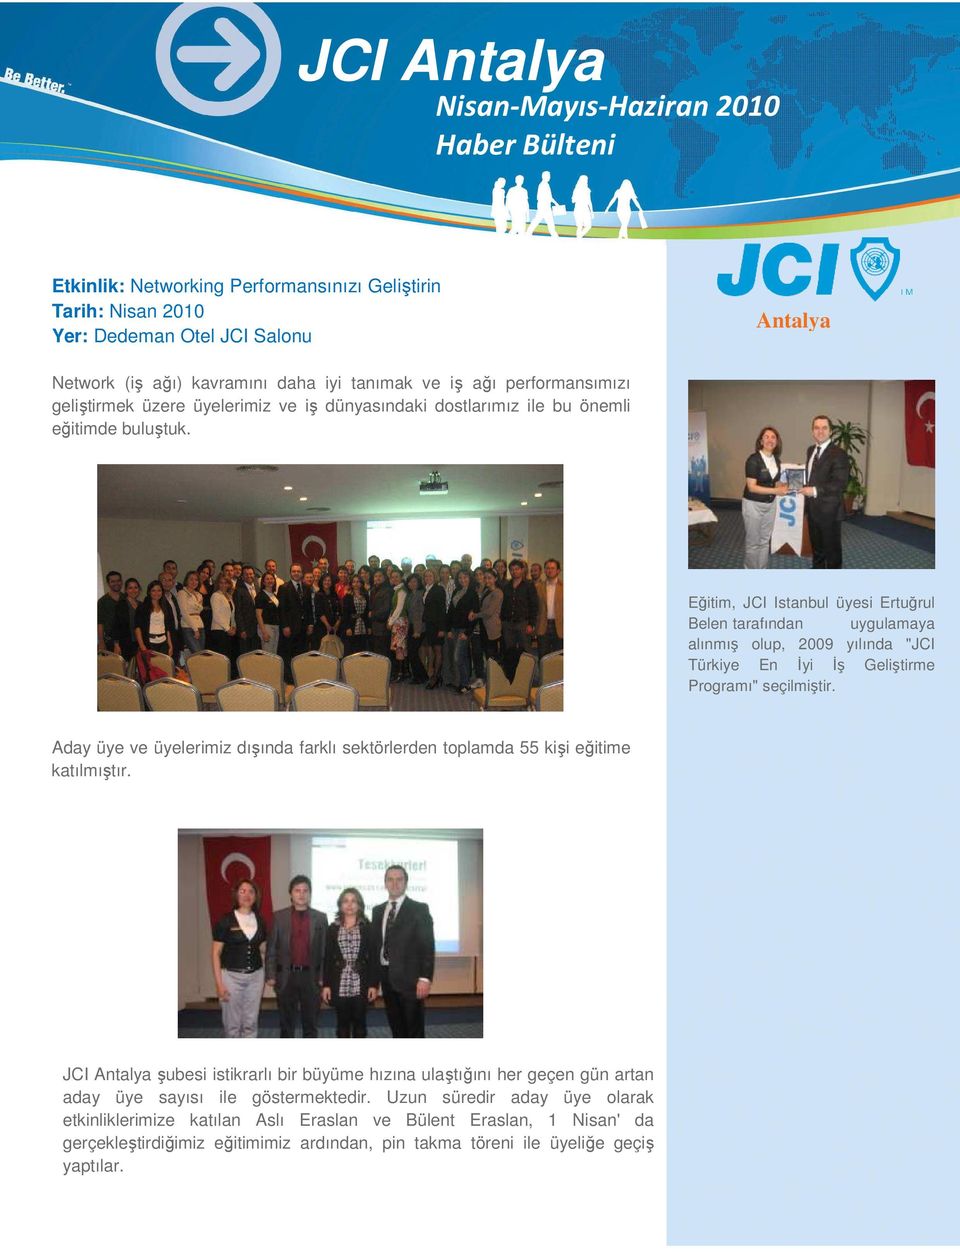 Eğitim, JCI Istanbul üyesi Ertuğrul Belen tarafından uygulamaya alınmış olup, 2009 yılında "JCI Türkiye En Đyi Đş Geliştirme Programı" seçilmiştir.